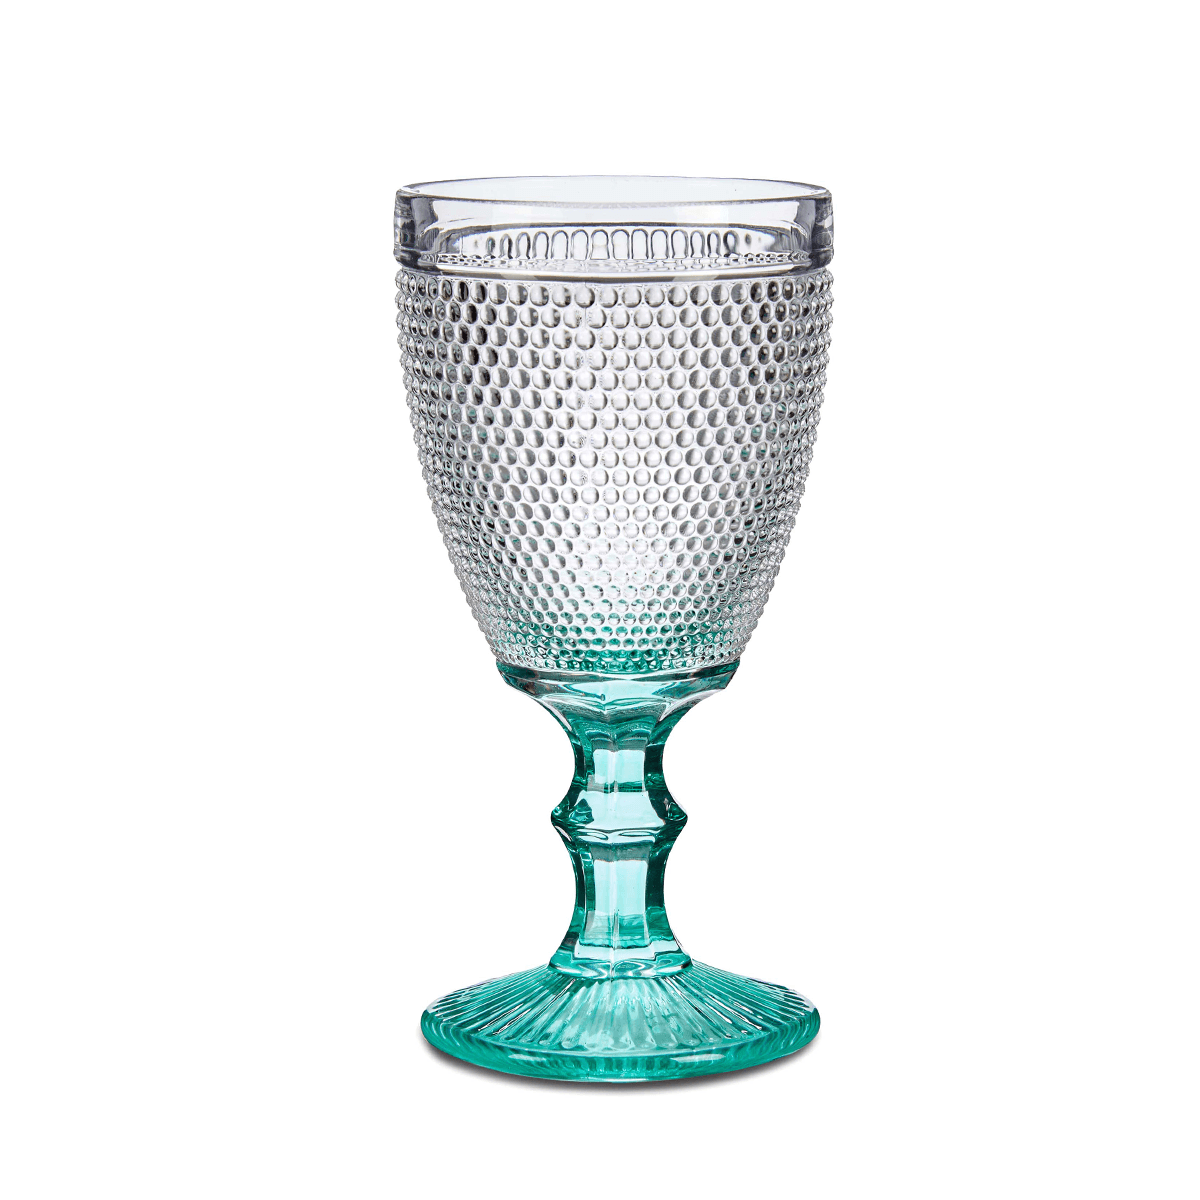 كاسات عصير 6 قطع 330 مل زجاج أخضر فيفالتو Vivalto 6 Pieces Water Foot Turquoise Points Cup Set 330 ml Transparent Glass